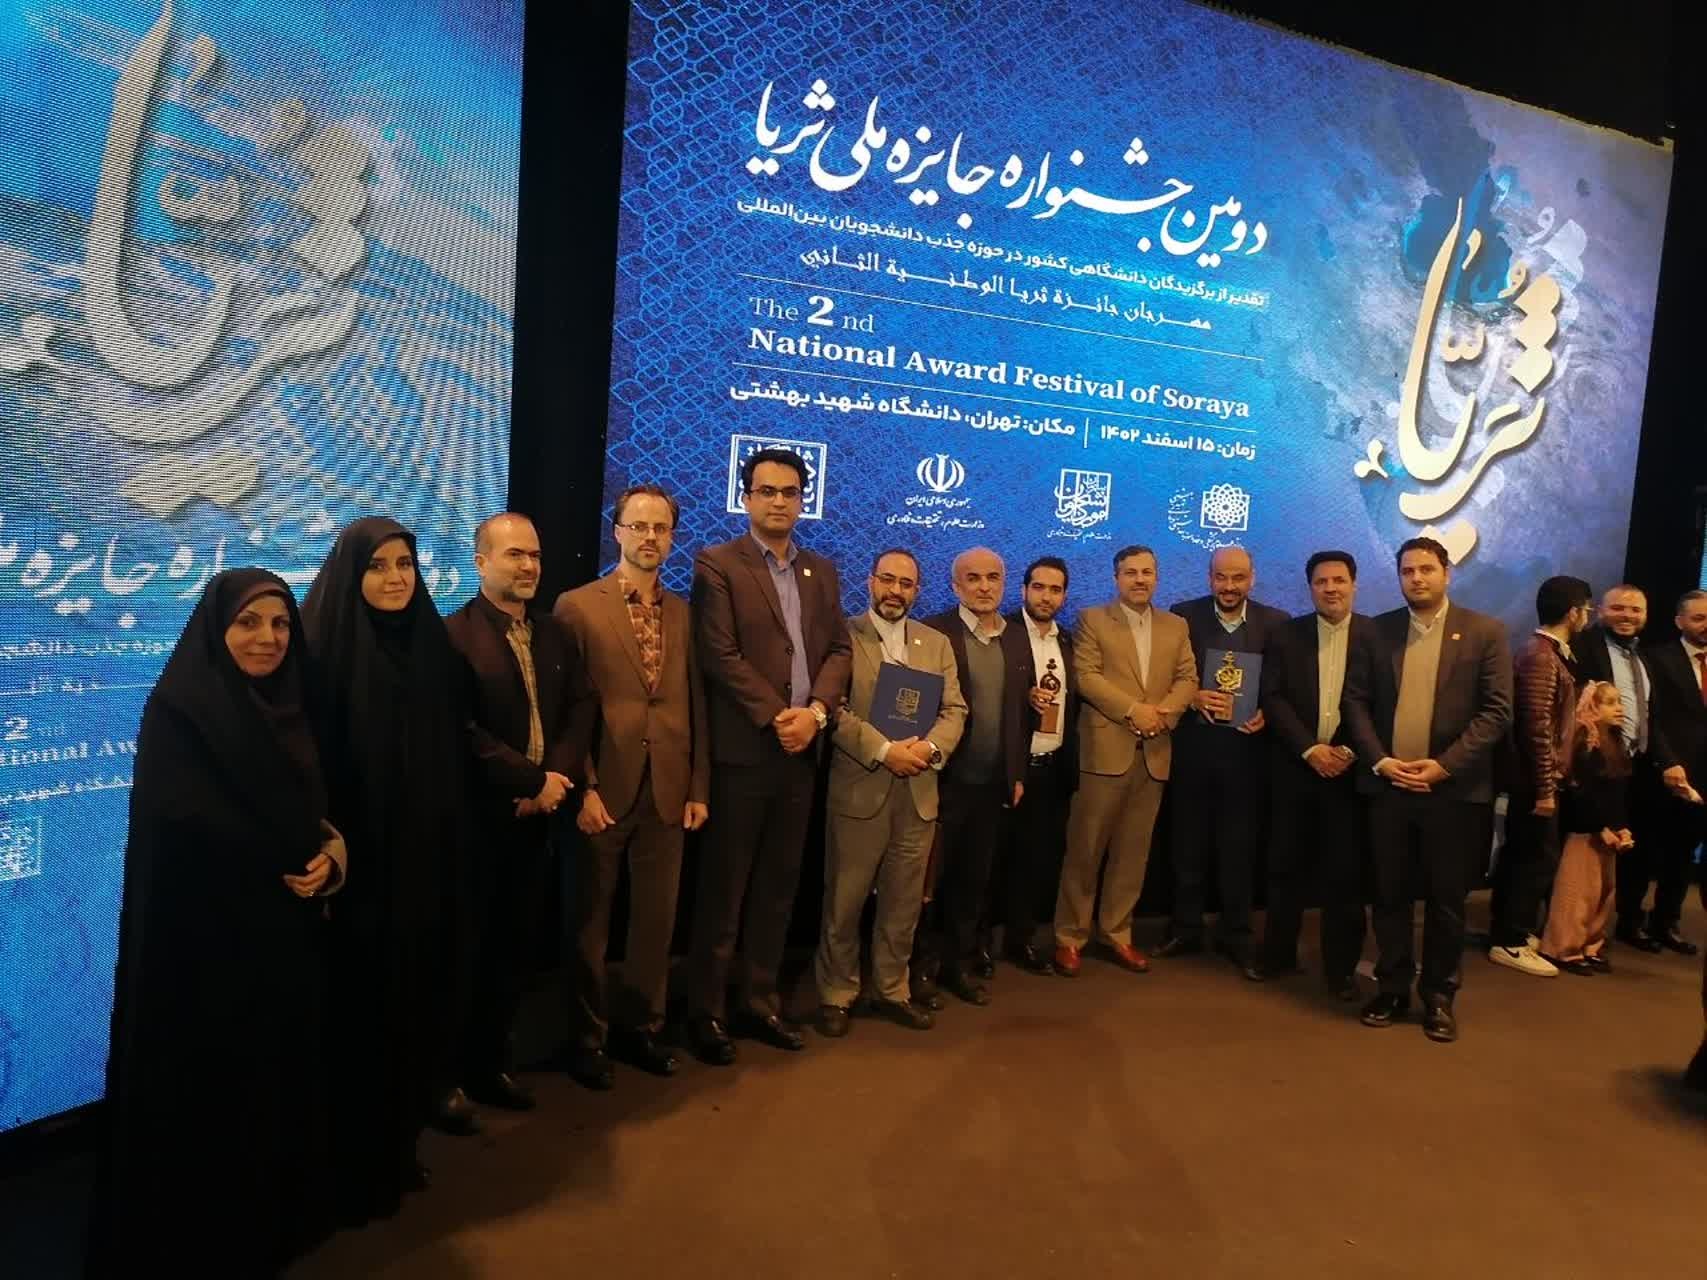 درخشش دانشگاه بین المللی امام خمینی ره در دومین جشنواره ملی ثریا با کسب 4 عنوان برگزیده